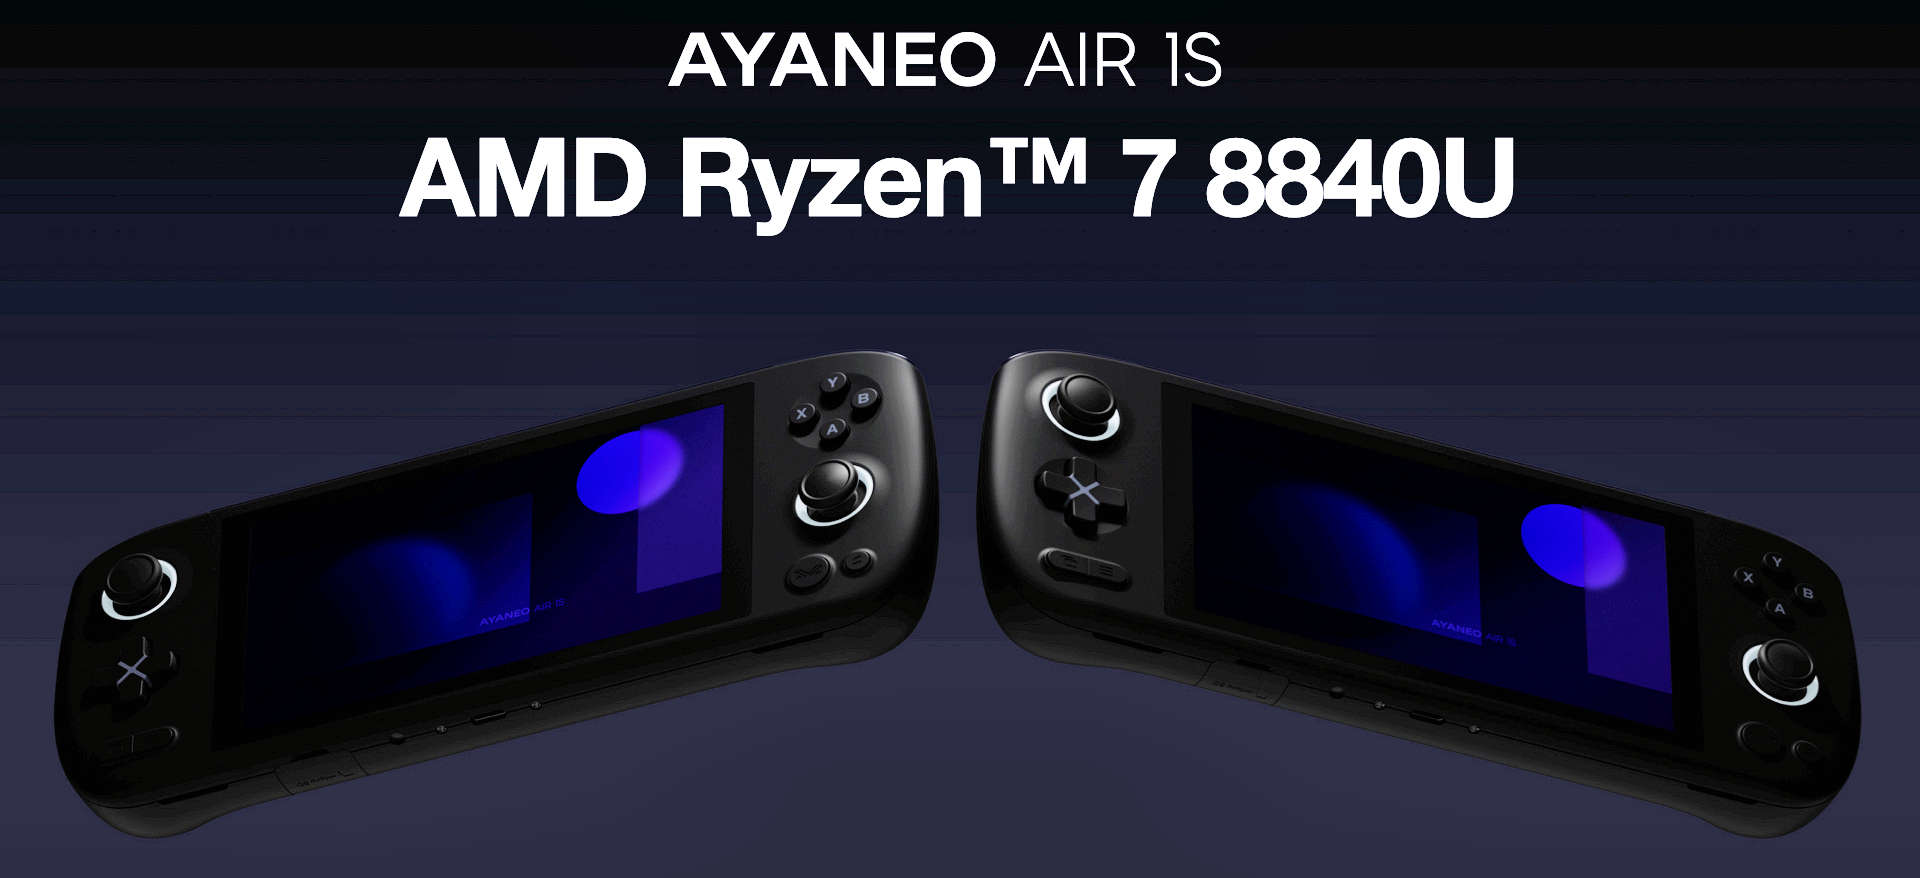 AYANEO AIR 1S OLED gaming handheld gets Ryzen 7 8840U APU option 